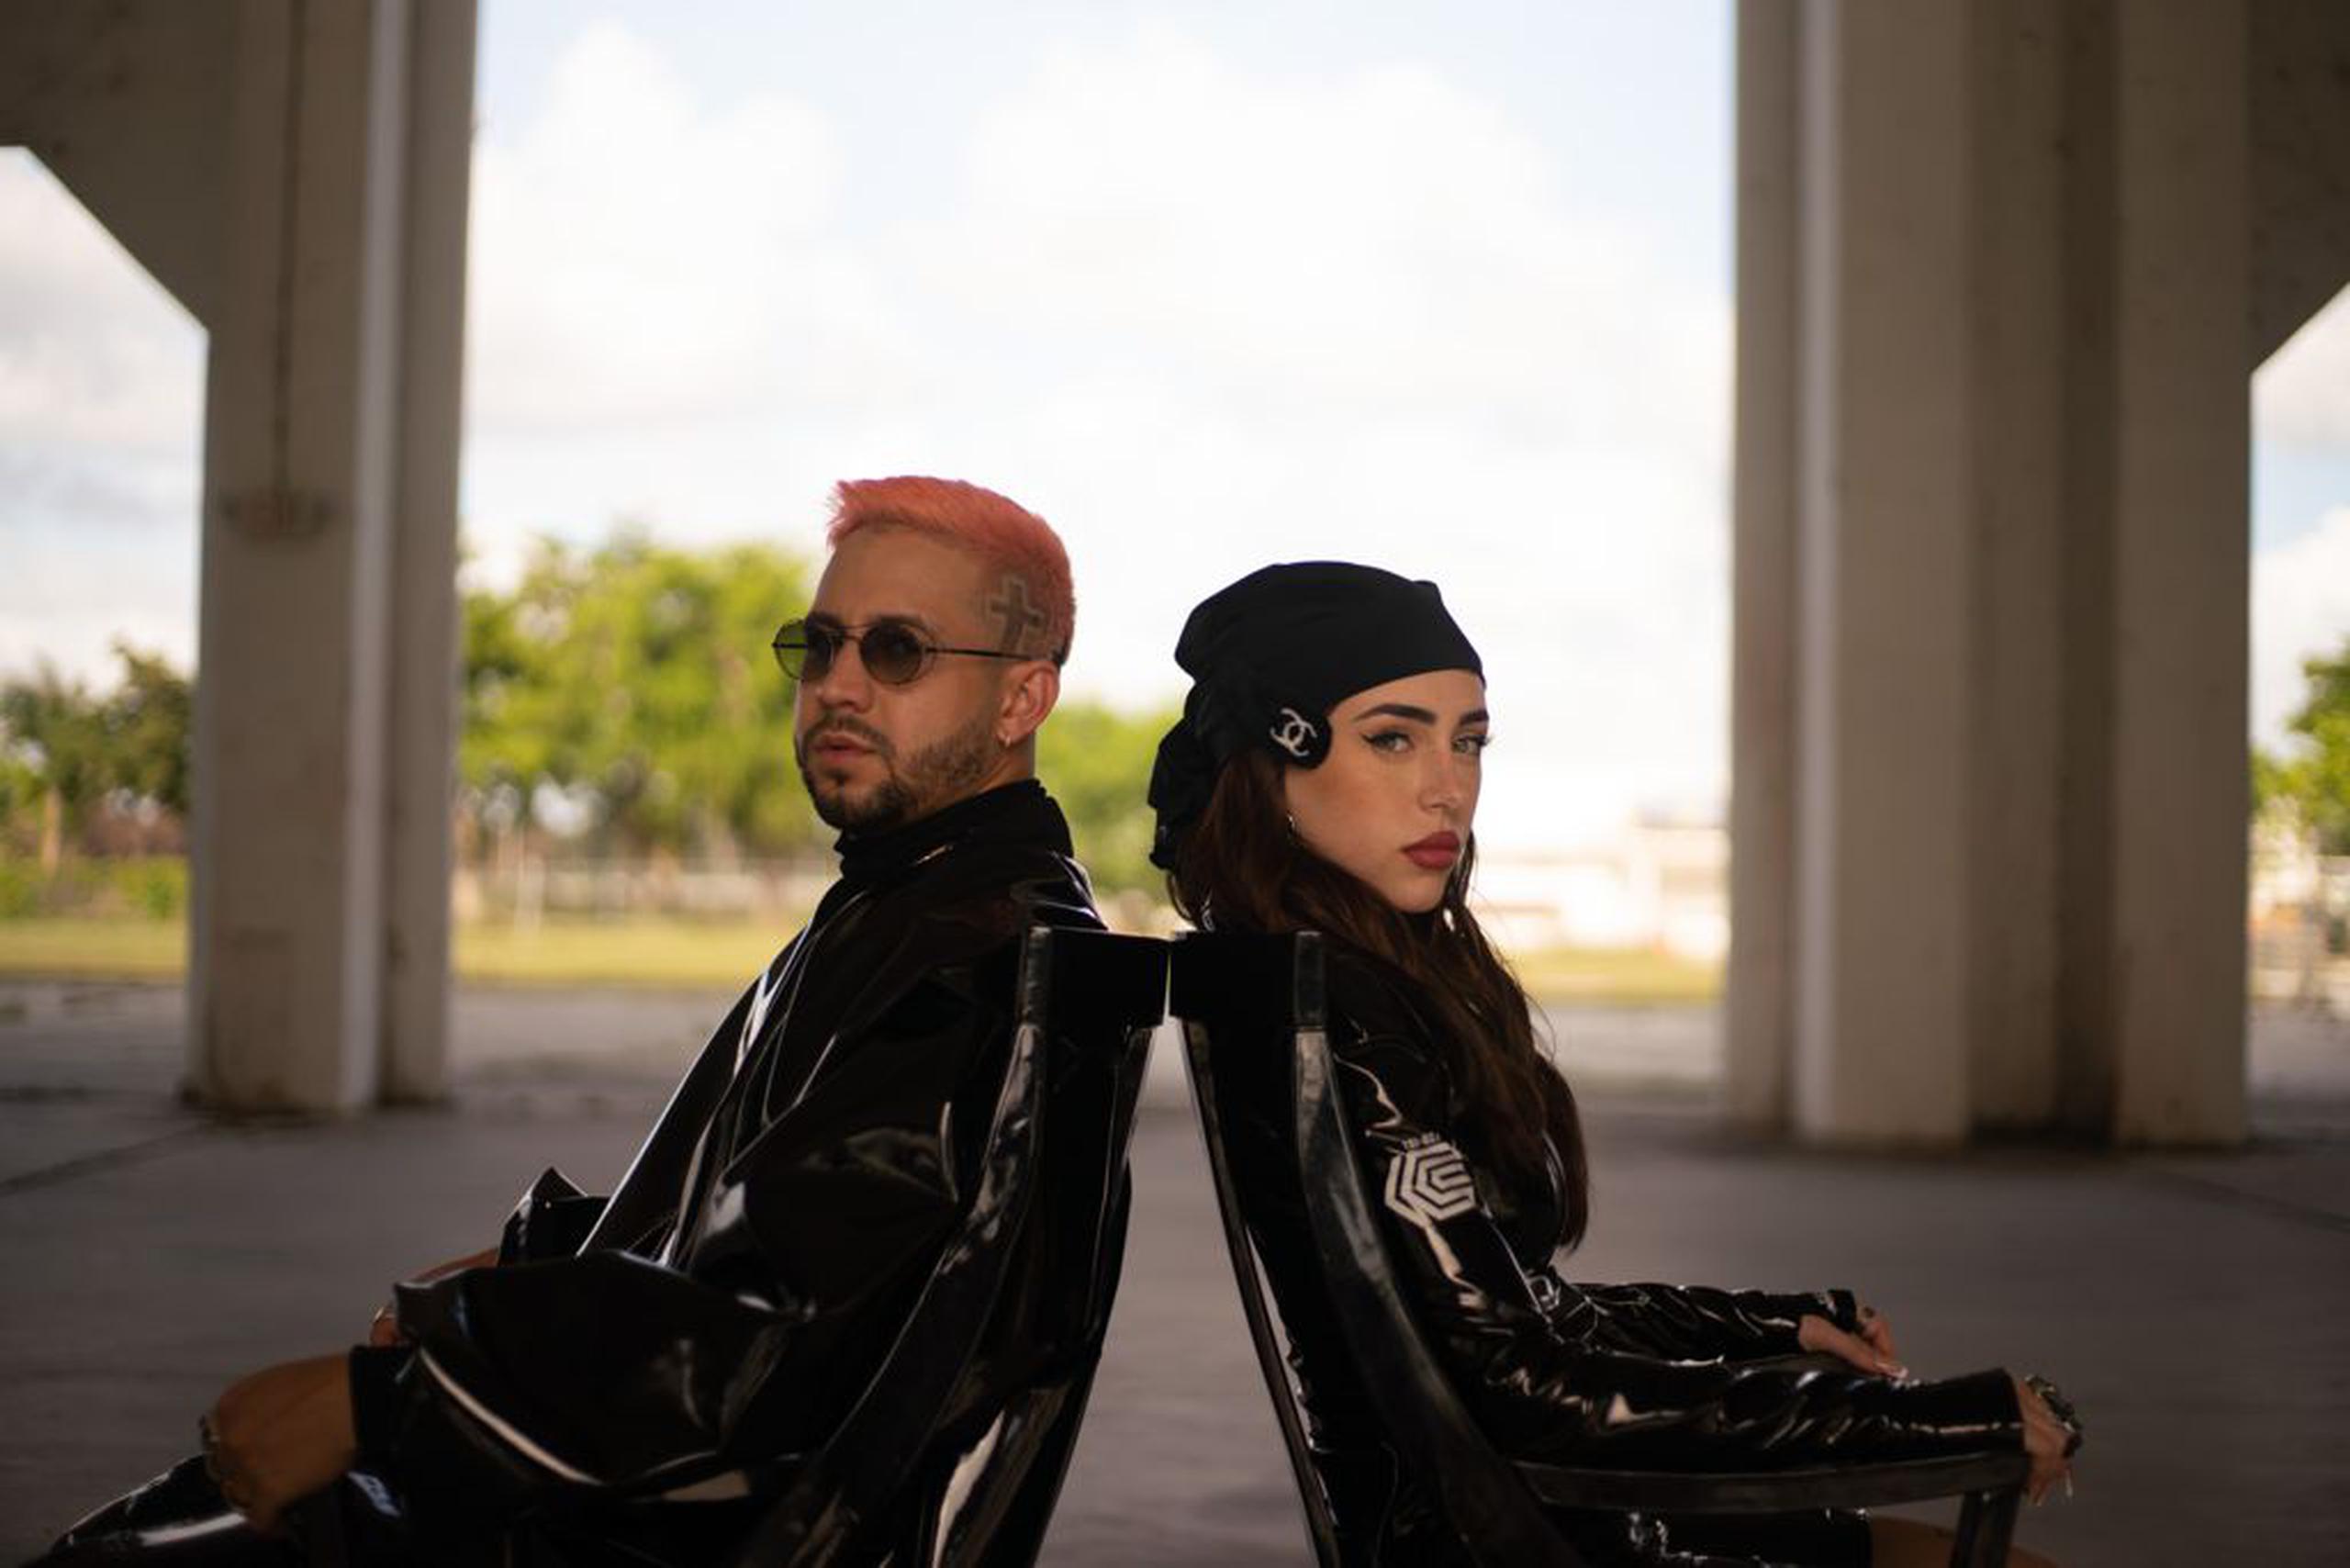 El video, realizado en Miami, se centra en la interacción de ambos intérpretes.